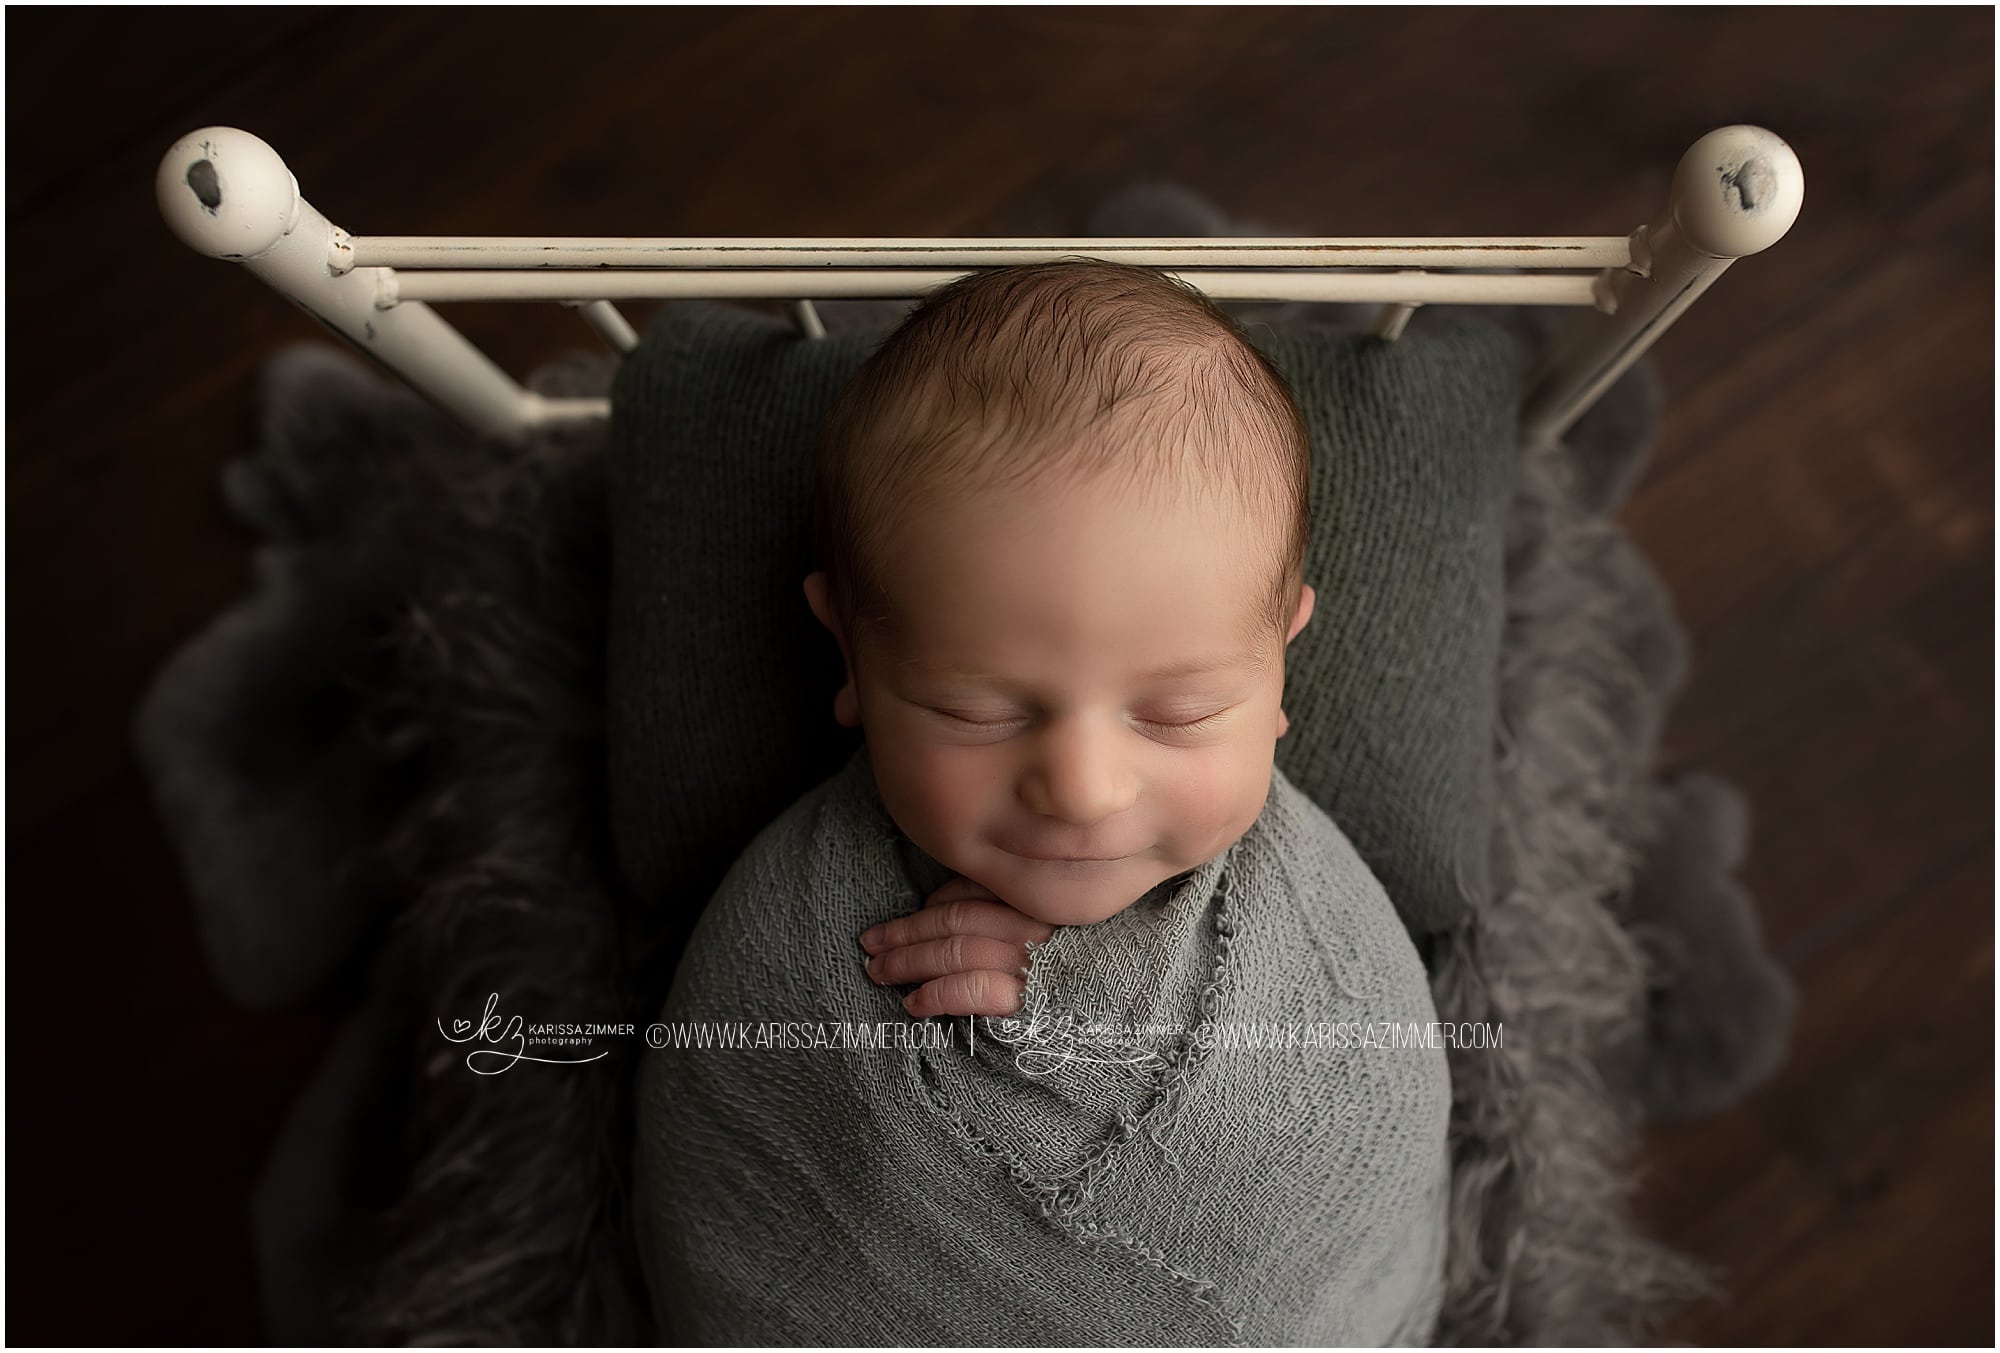 Karissa Zimmer Photography captures a smile on newborn baby boy